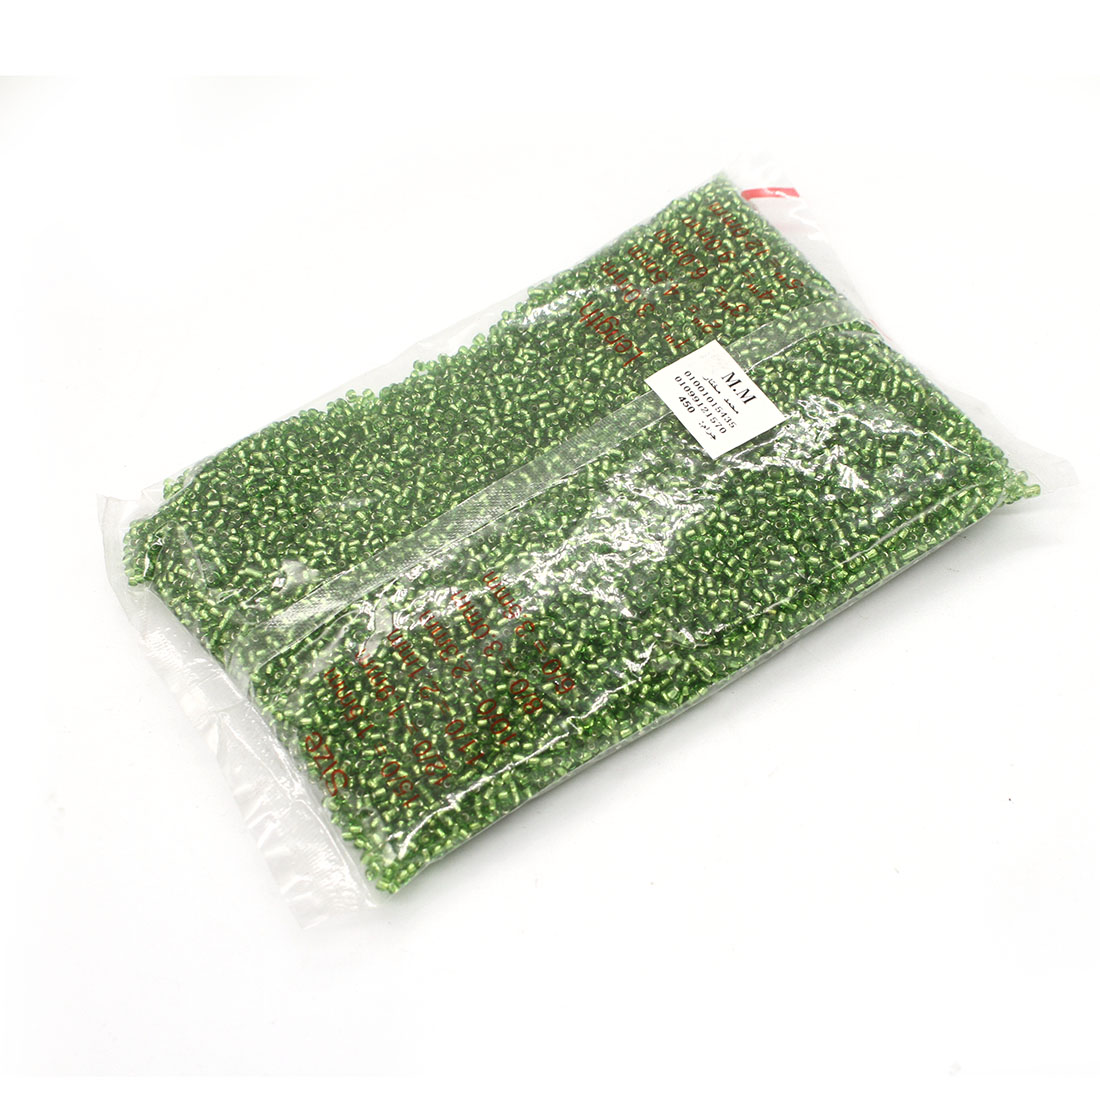 Grass green 4MM 4500 packs